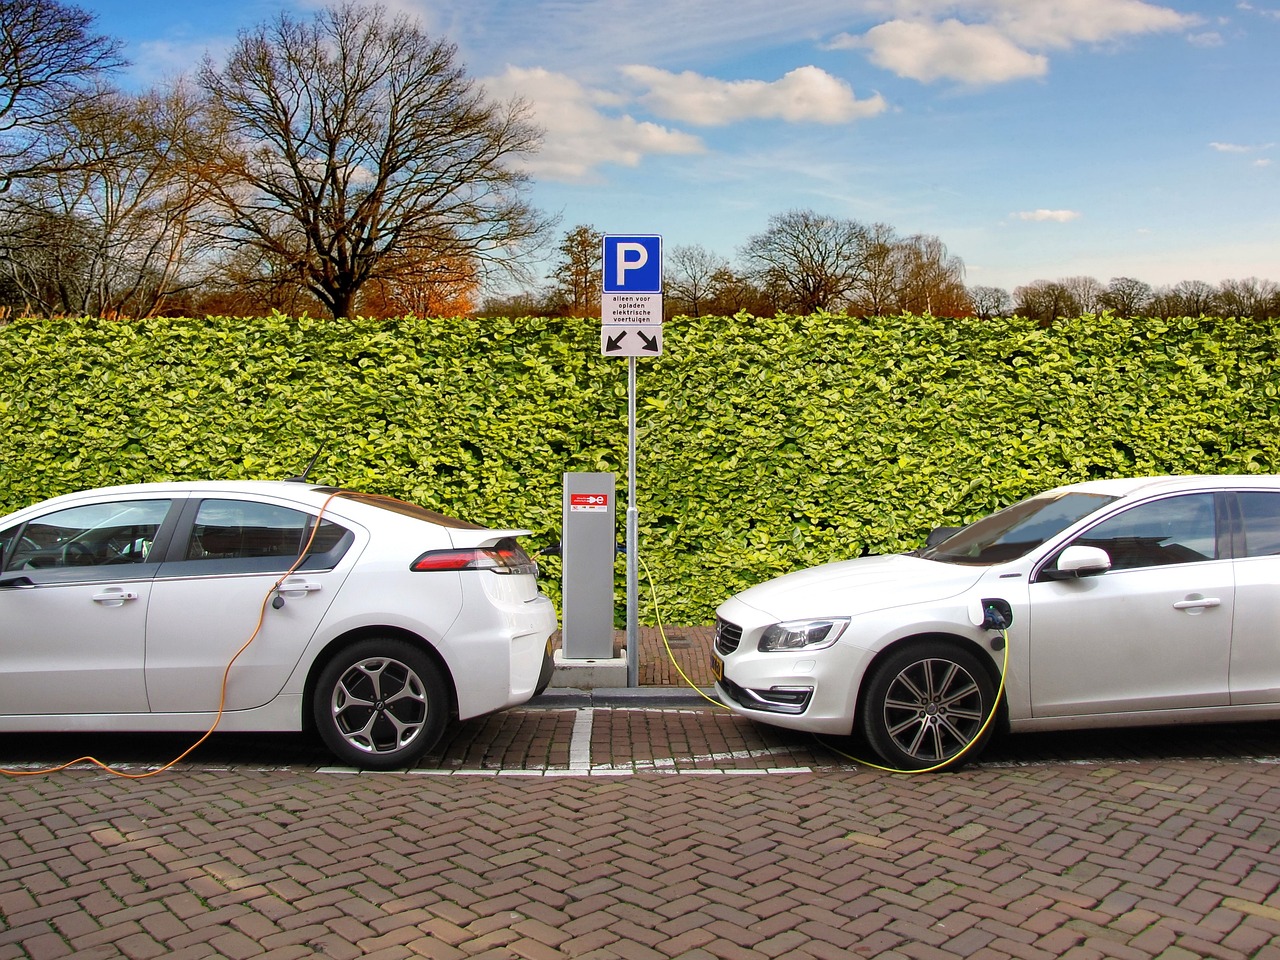 Stacje ładowania samochodów elektrycznych: Rozwój, dostępność i przyszłość